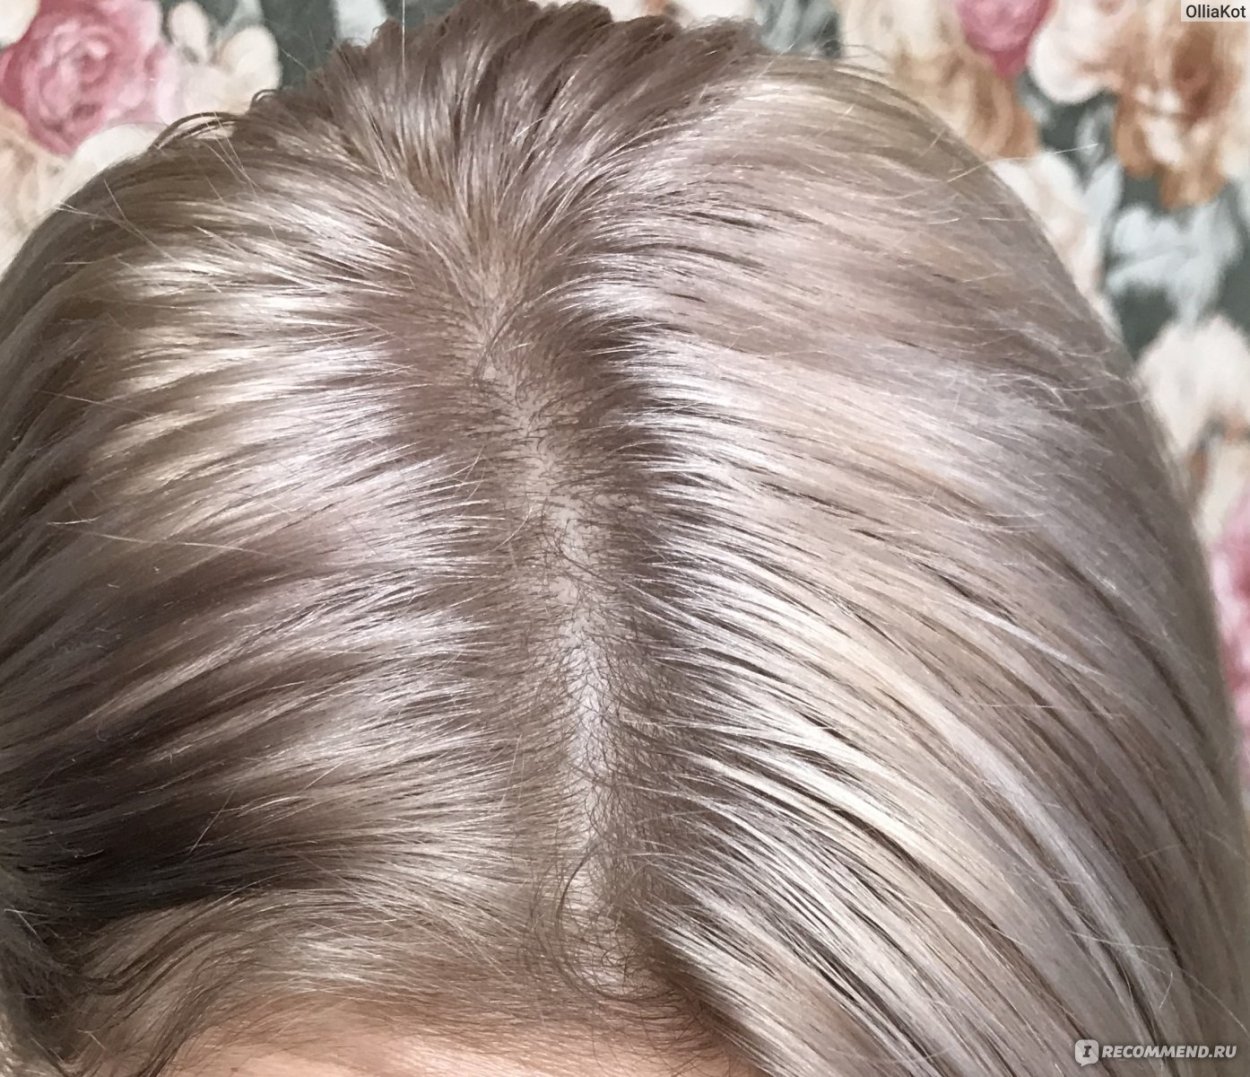 светло русый перламутровый цвет волос фото